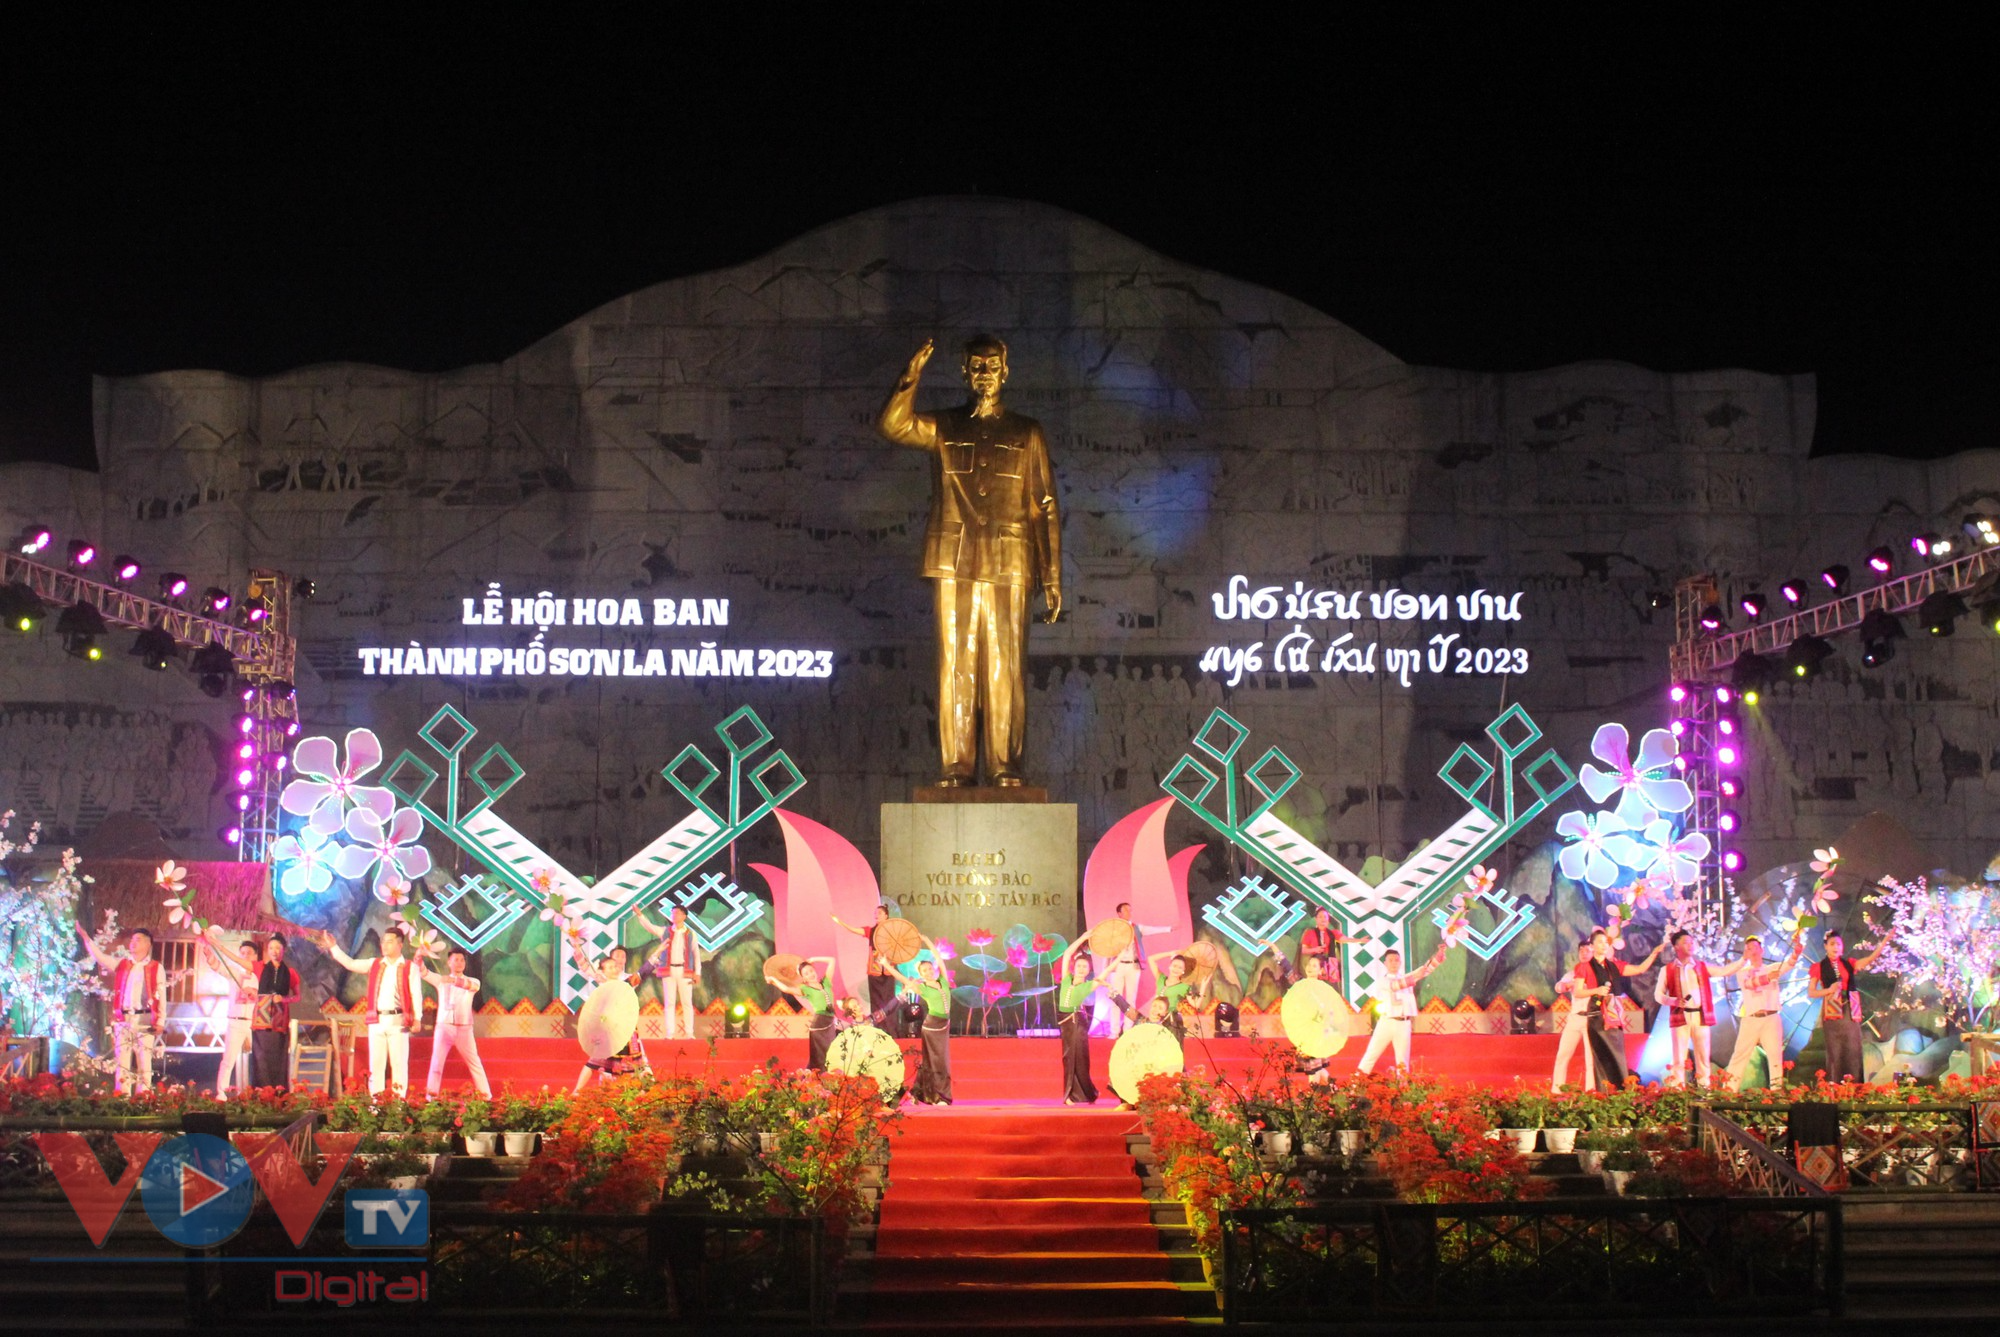 Mùa hoa ban thành phố Sơn La năm 2023 chính thức khai hội - Ảnh 1.